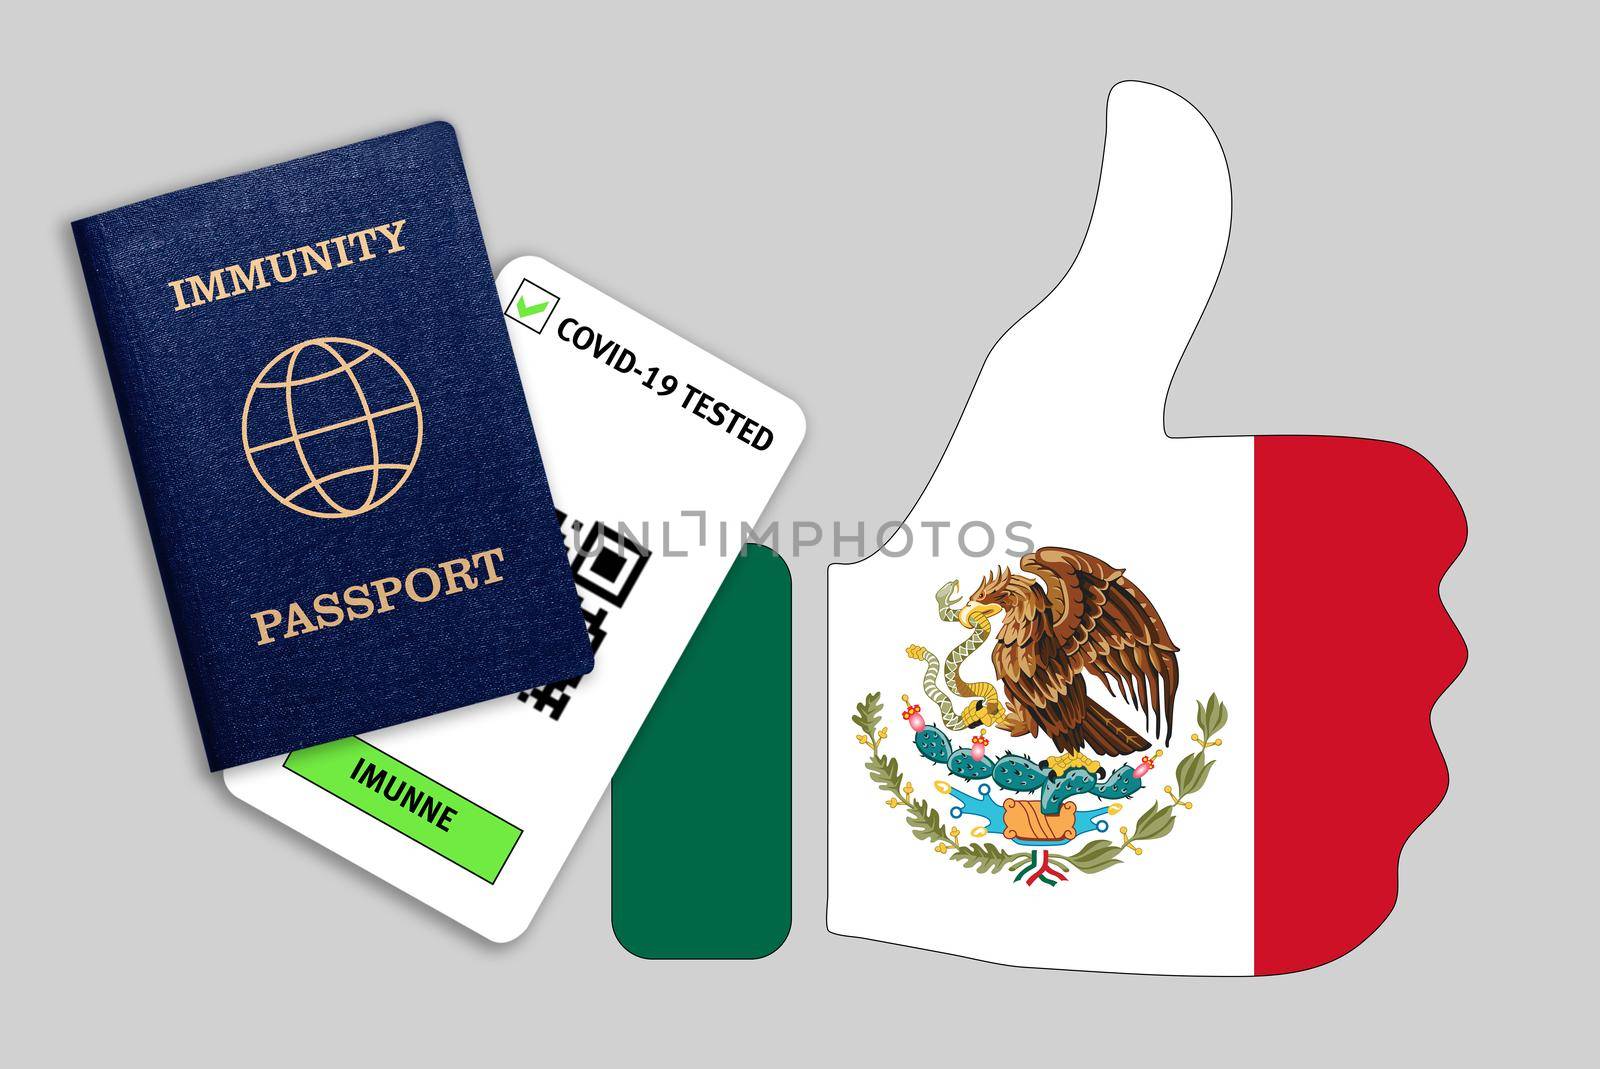 Immune passport and coronavirus test with thumb up with flag of Mexico by galinasharapova